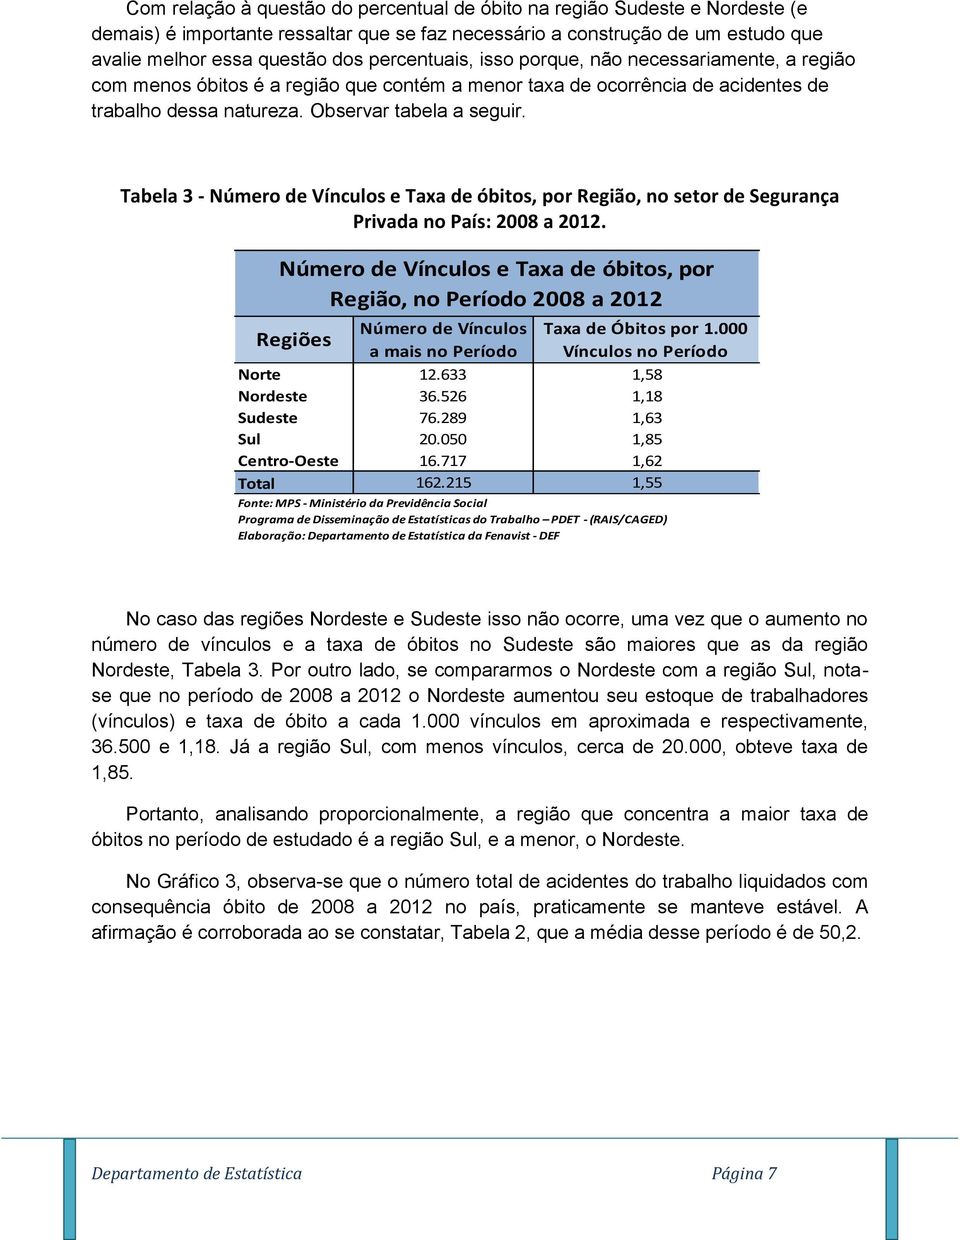 Tabela 3 - Número de Vínculos e Taxa de óbitos, por Região, no setor de Segurança Privada no País: 2008 a 2012.